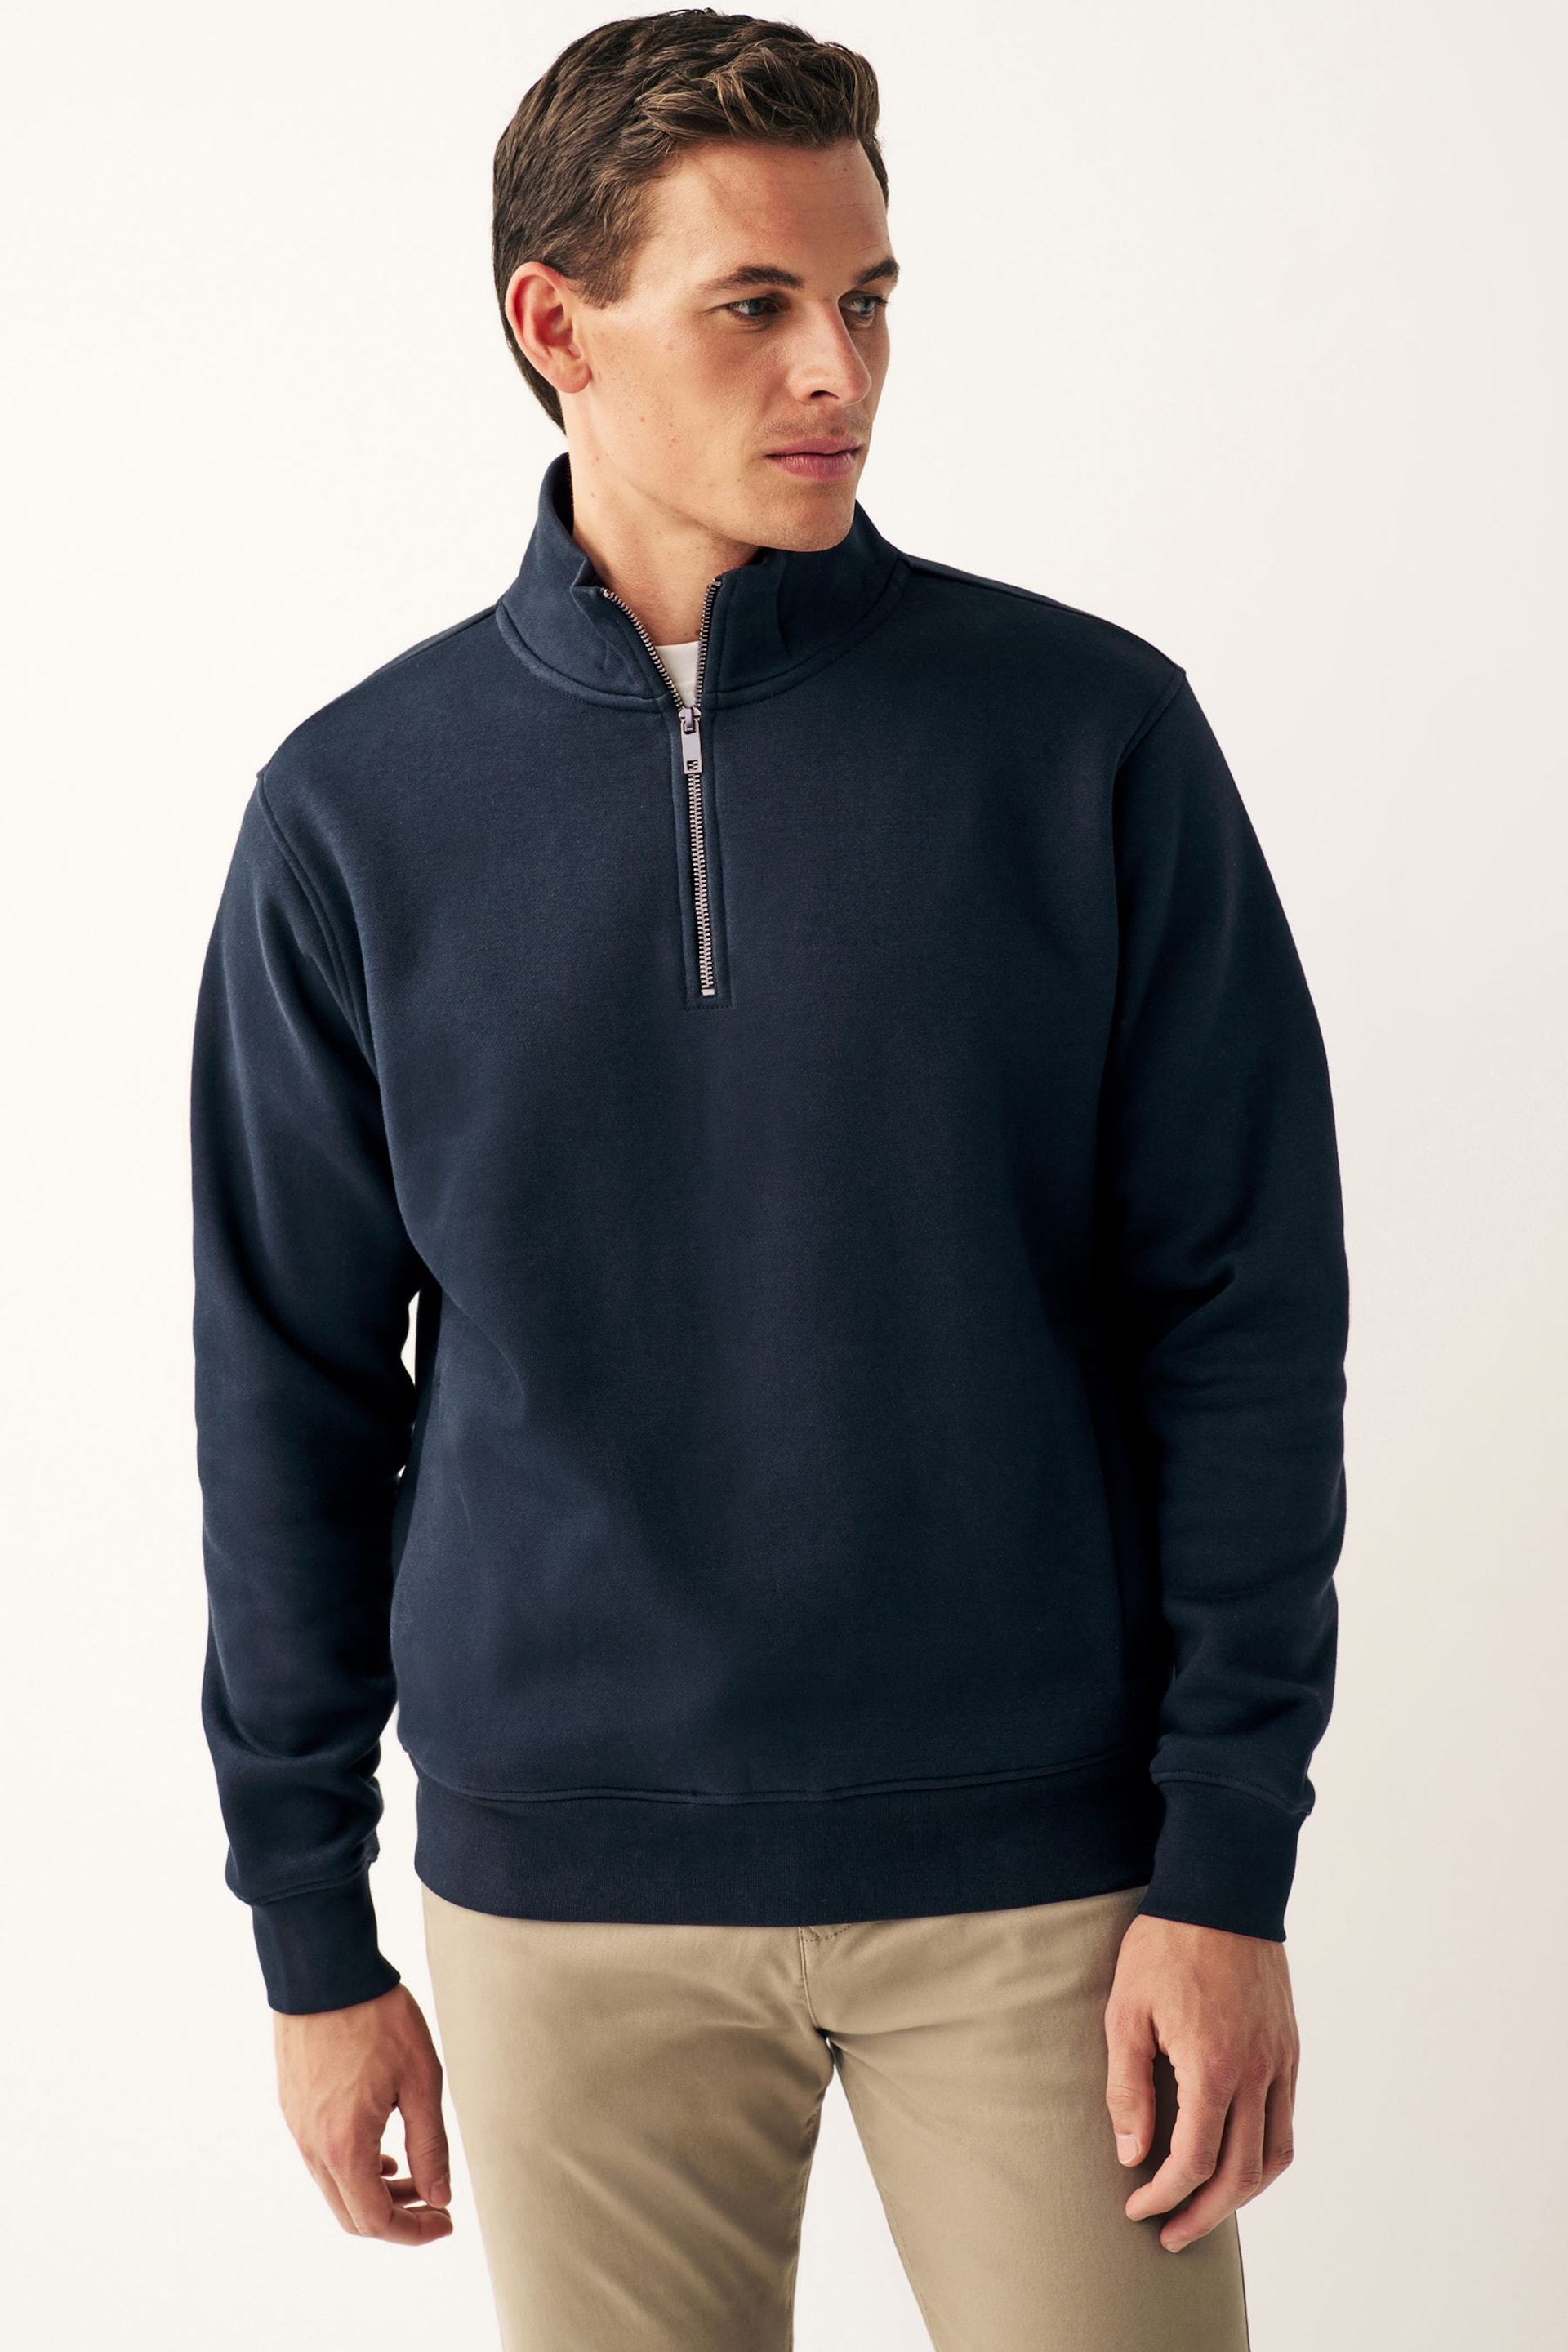 Navy Zip Neck Jersey Cotton Rich Sweatshirt - Image 1 of 7